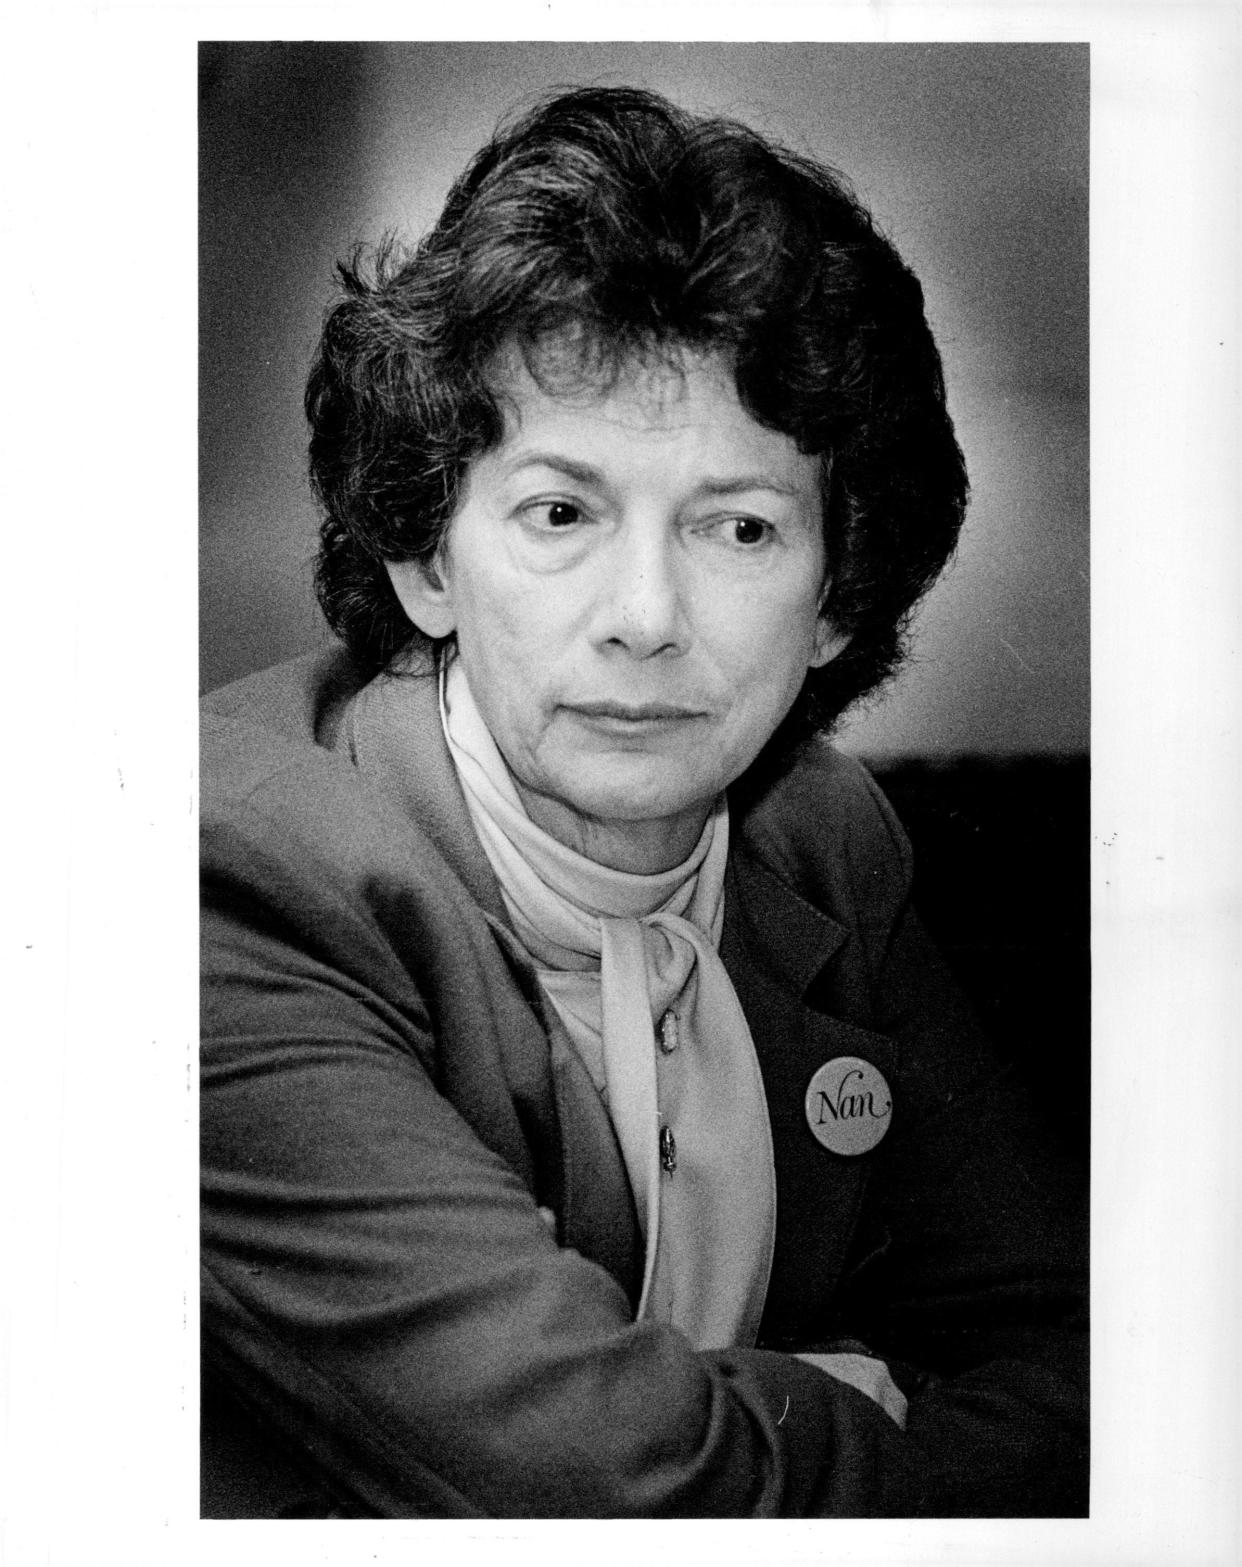 Nan Johnson in 1983